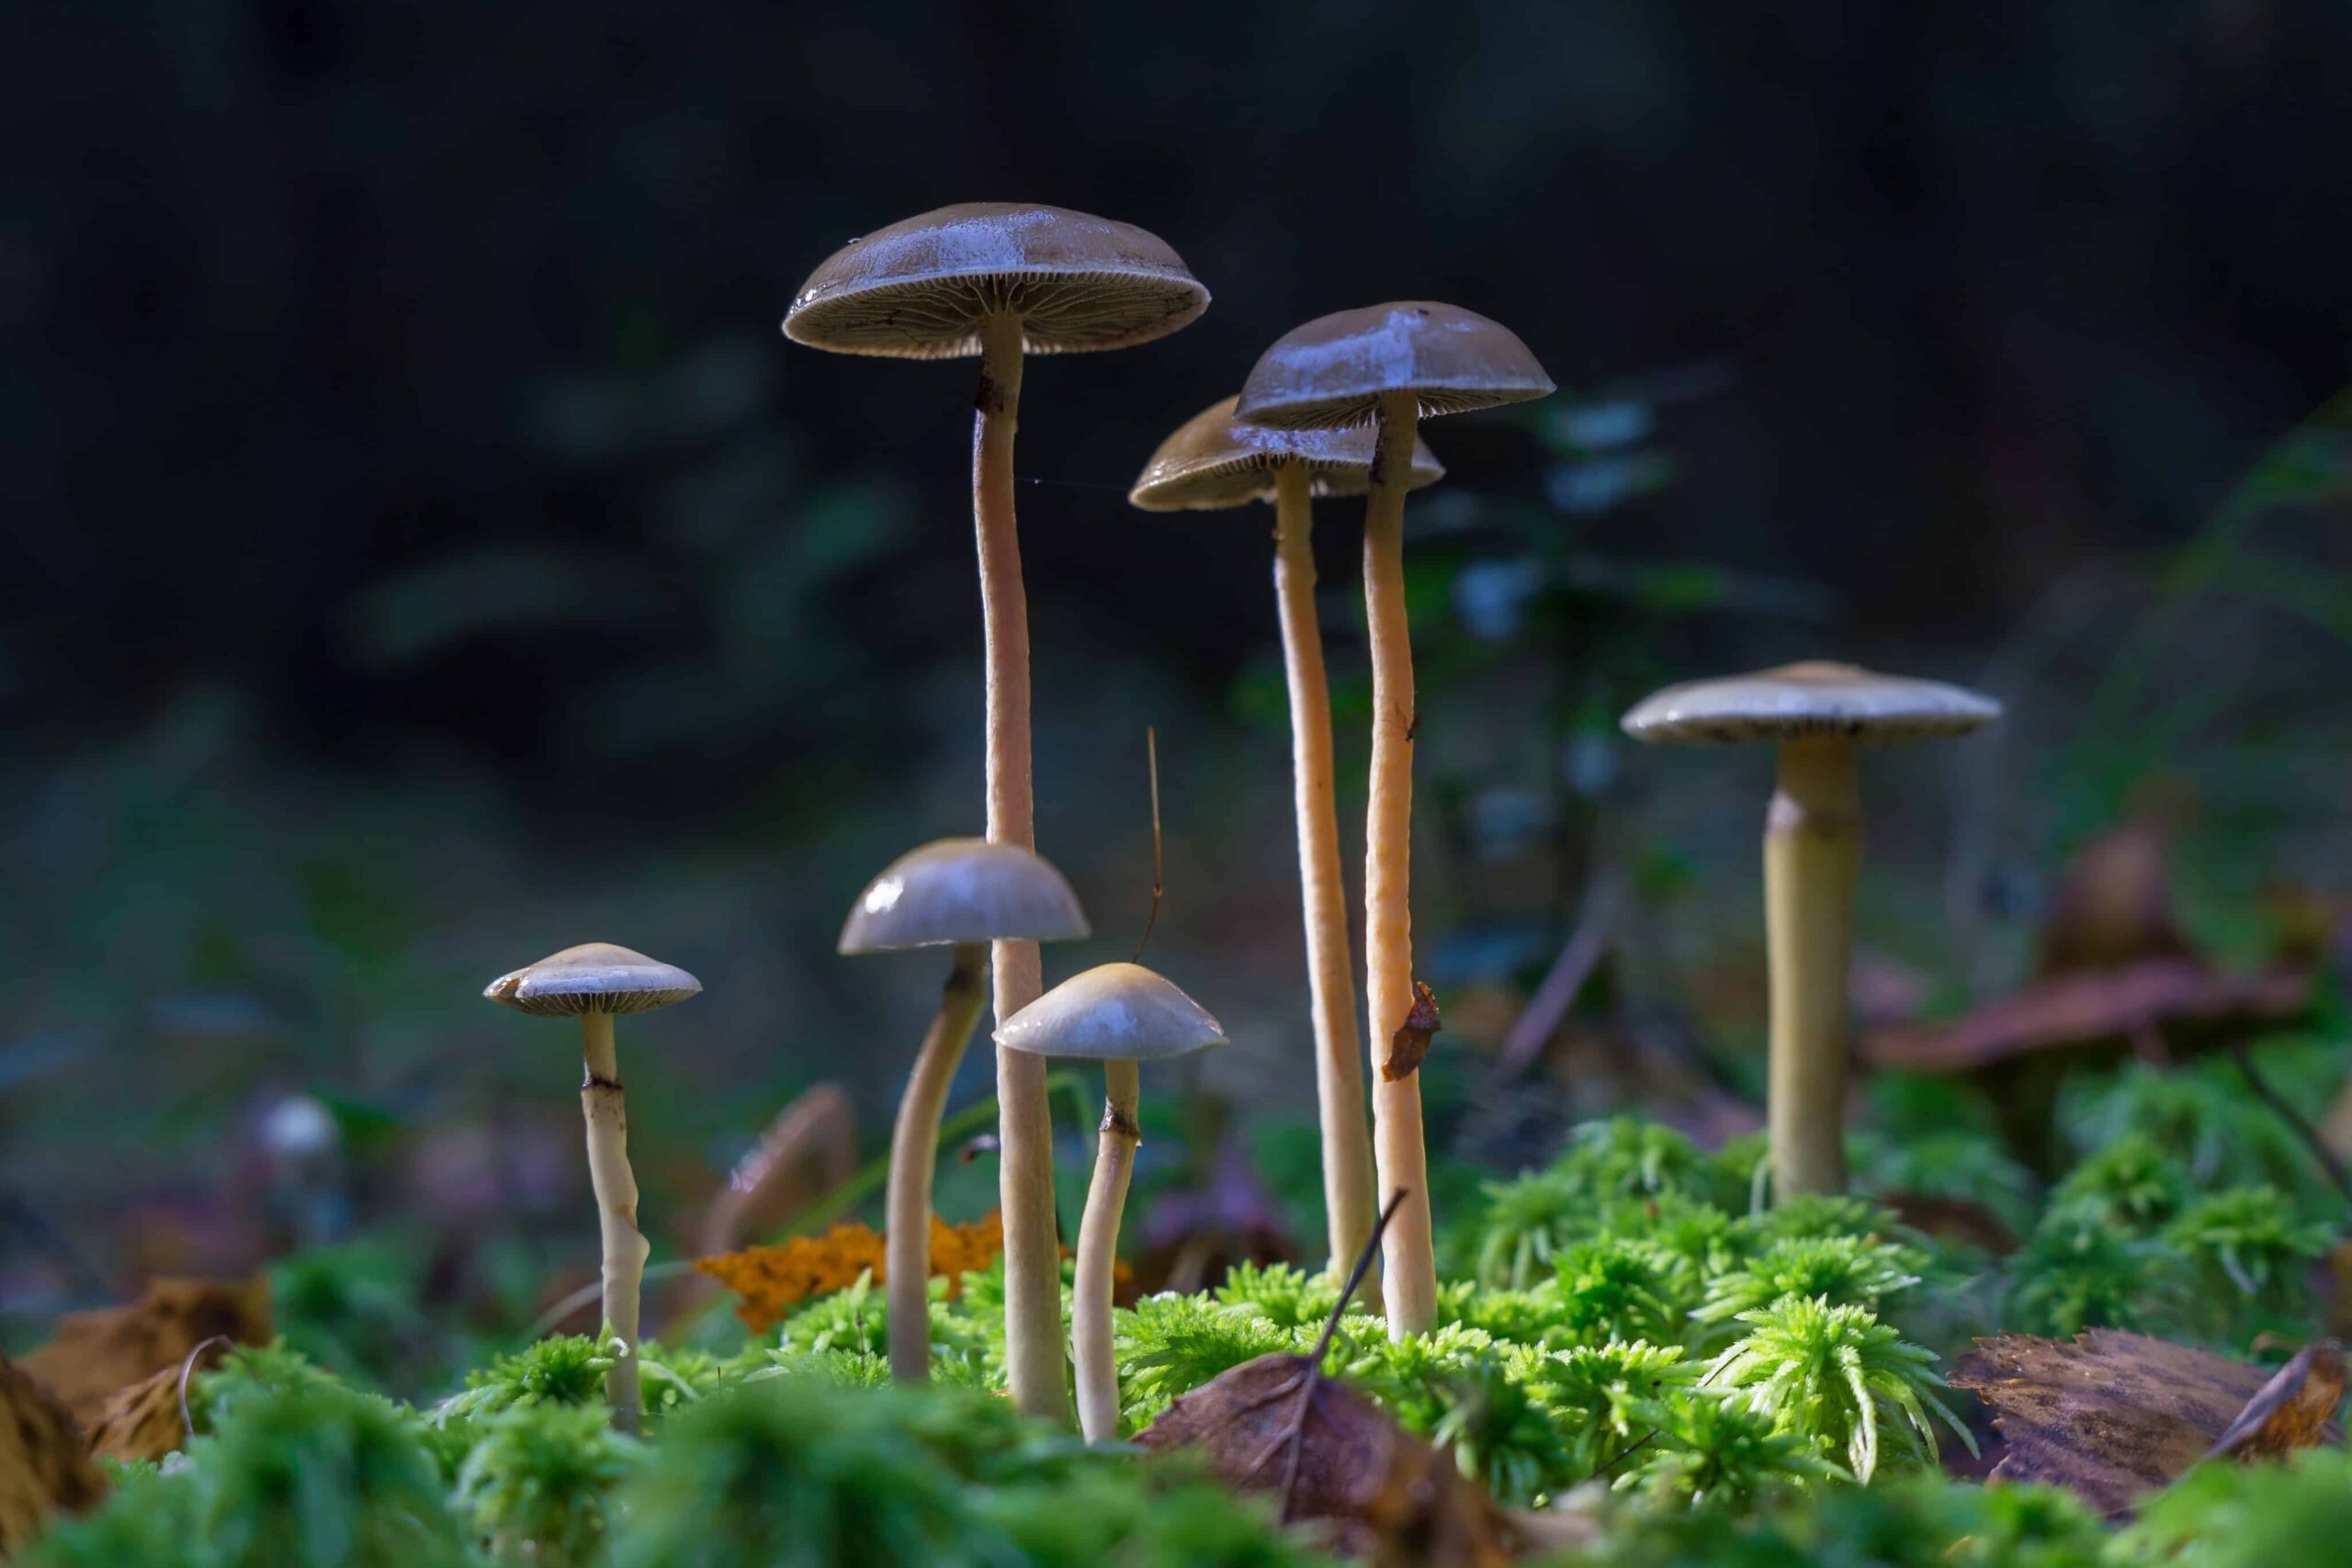 Prima licenza di coltivazione di funghi in Nuova Zelanda concessa al gruppo Māori